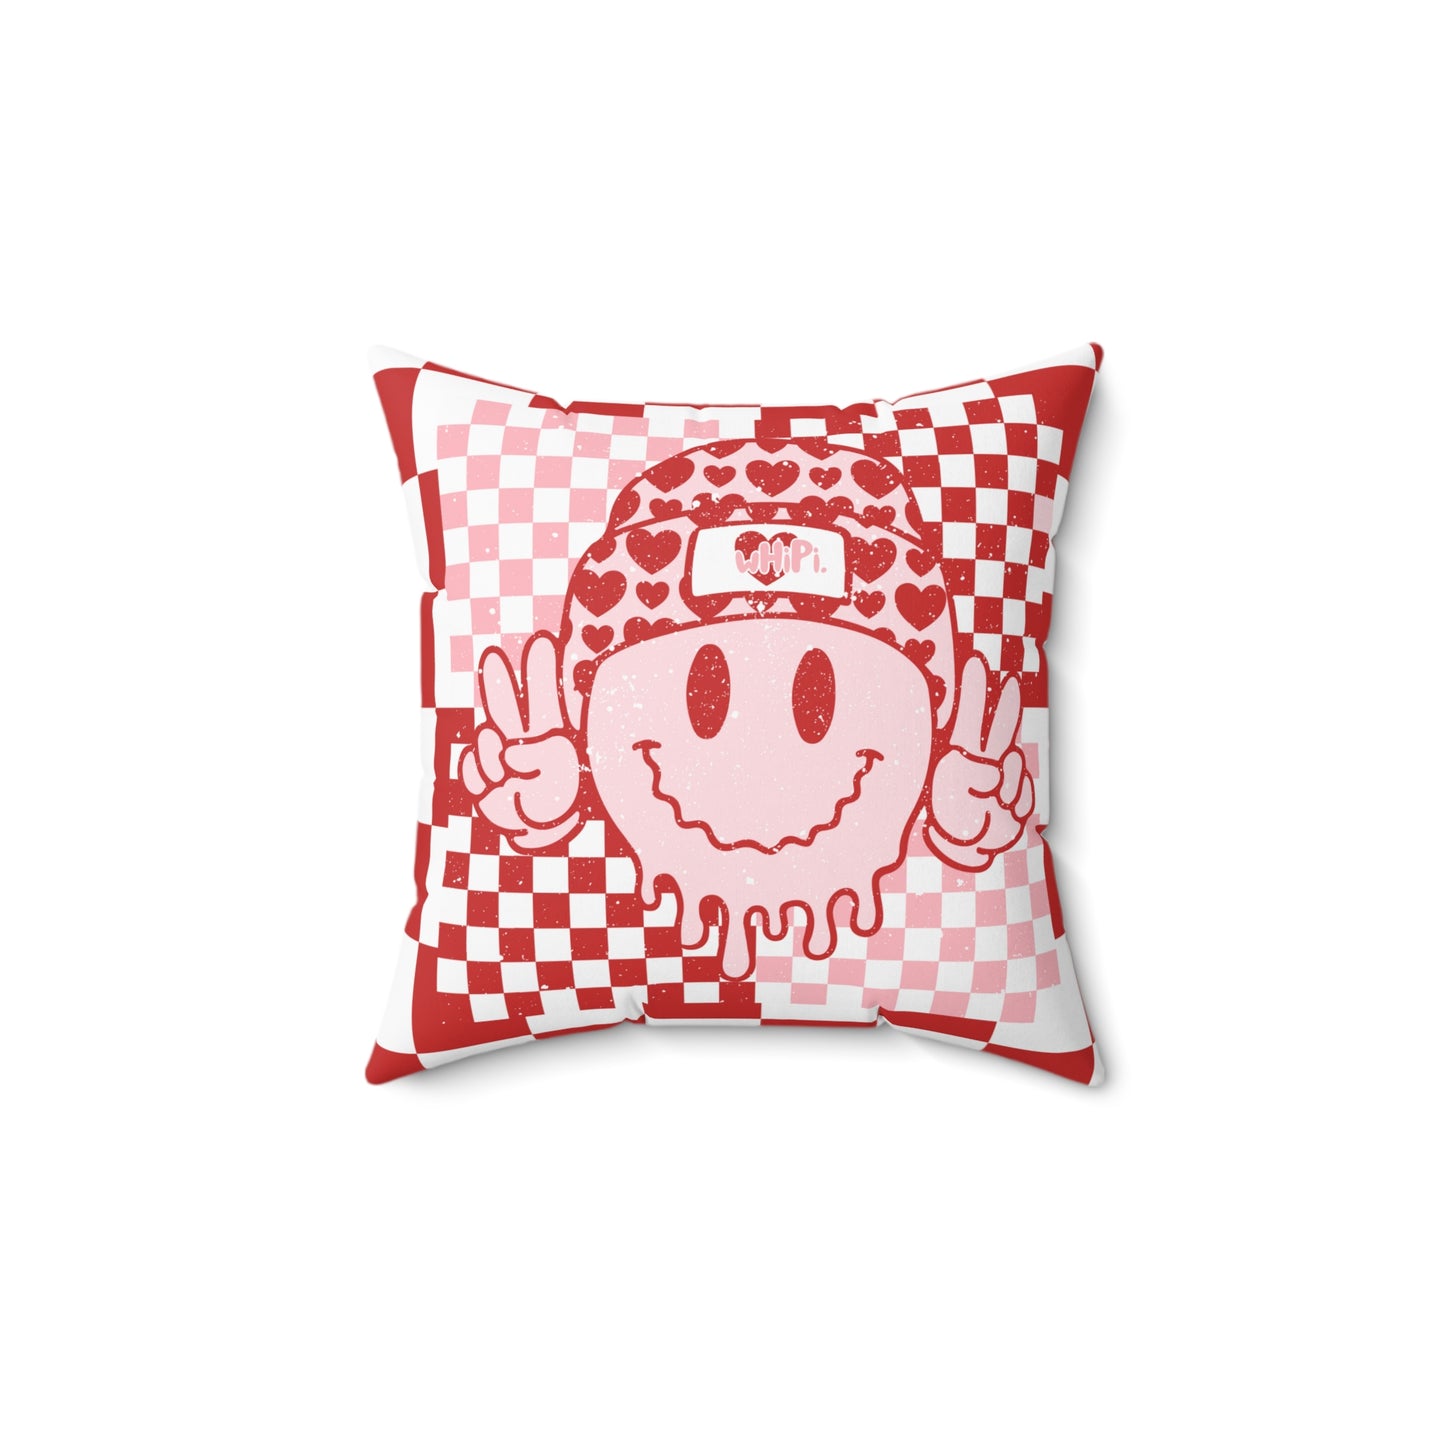 Checkered Smiley Spun Polyester Square Pillow